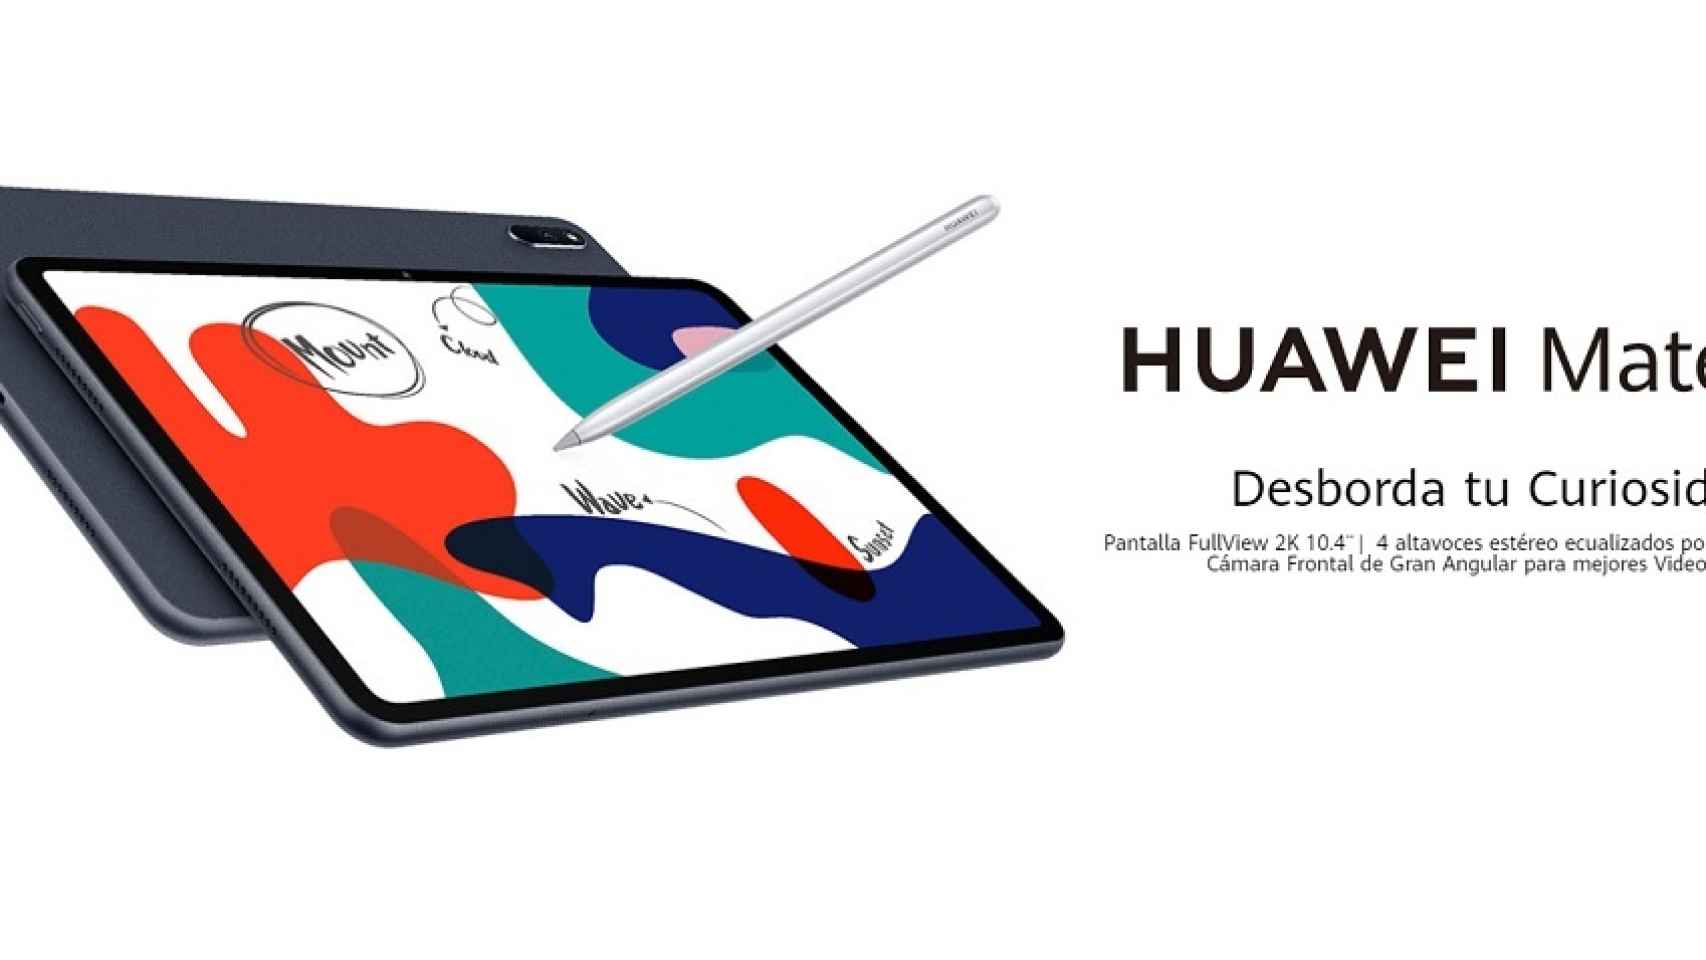 La Huawei MatePad 10.4 New Edition llega a España: precio y disponibilidad